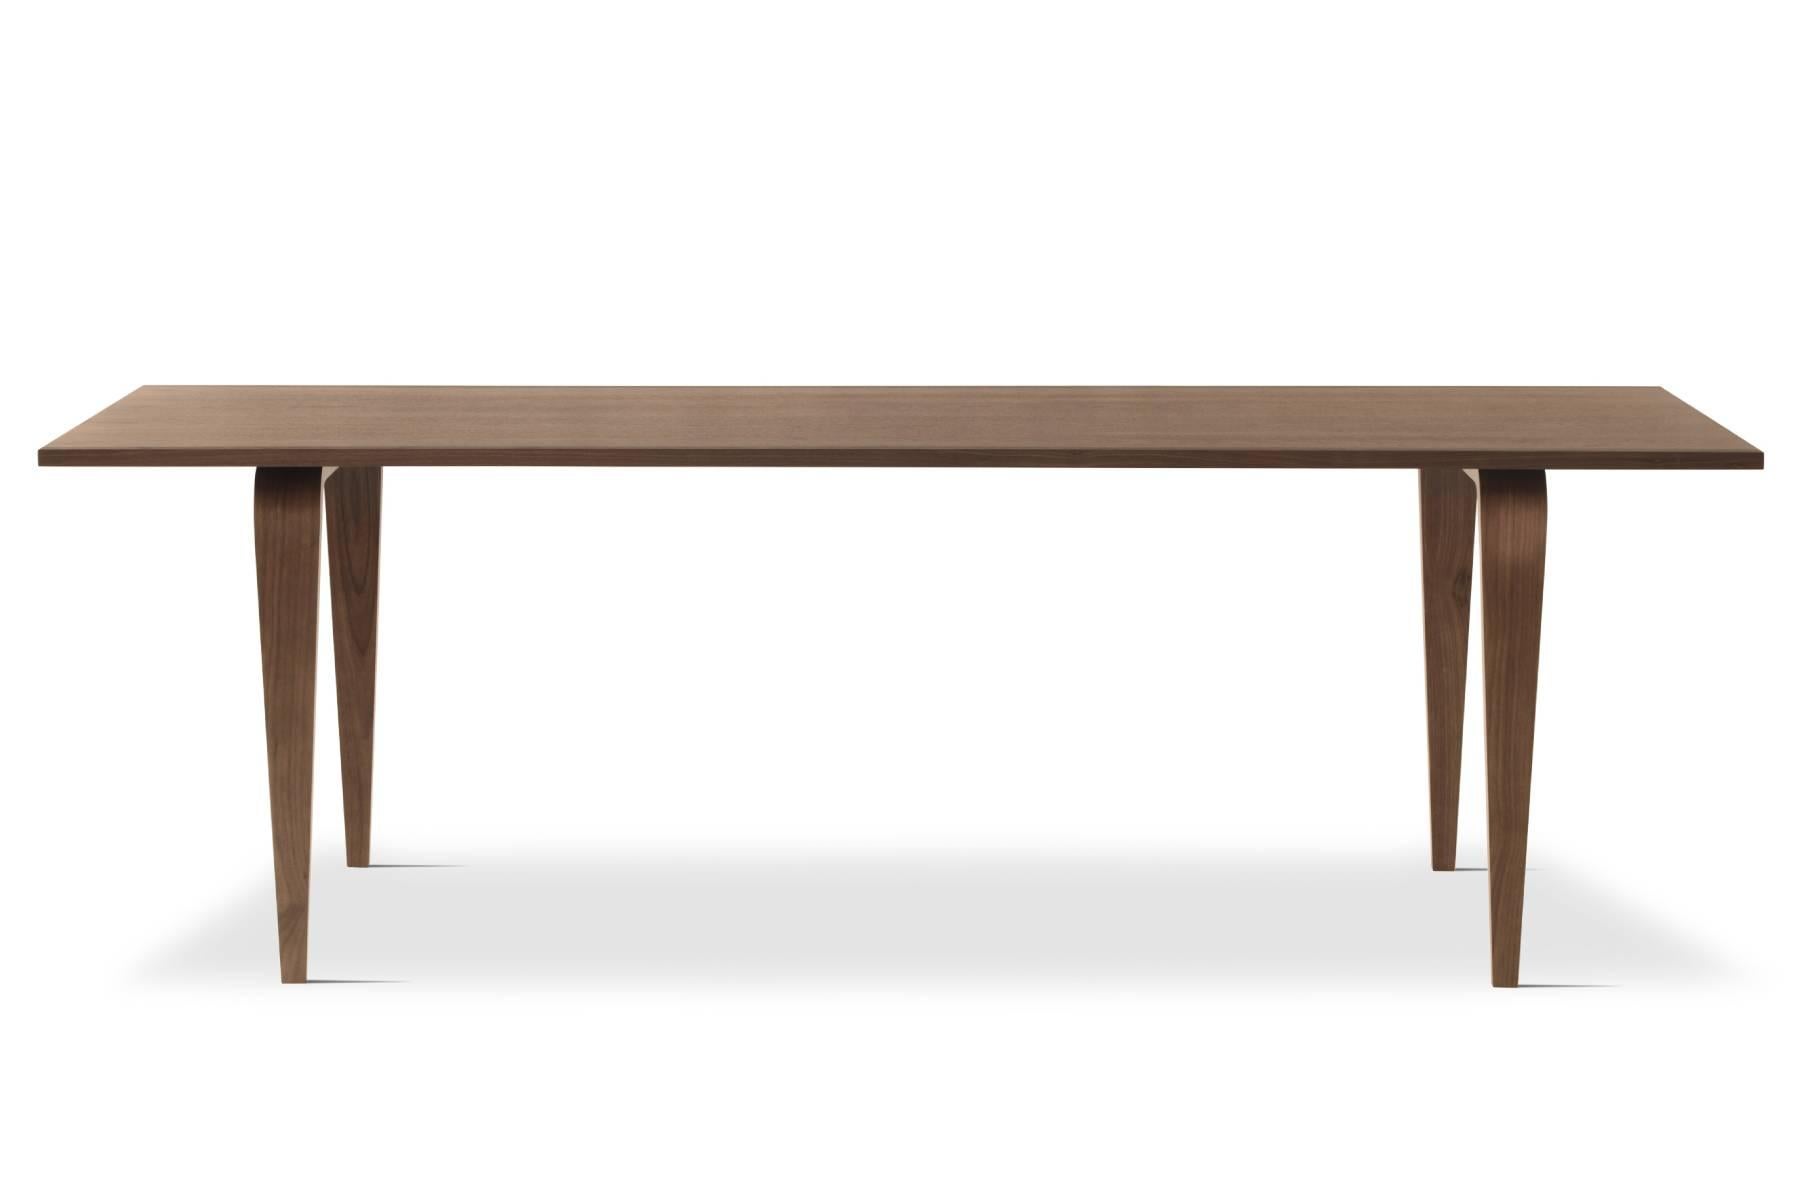 Introduites en 2003, les tables Cherner sont conçues par Benjamin Cherner pour compléter les sièges Cherner. Parfaites dans un cadre formel ou informel, les tables sont solides et légères. Les tables Cherner sont disponibles en formes ovale, ronde